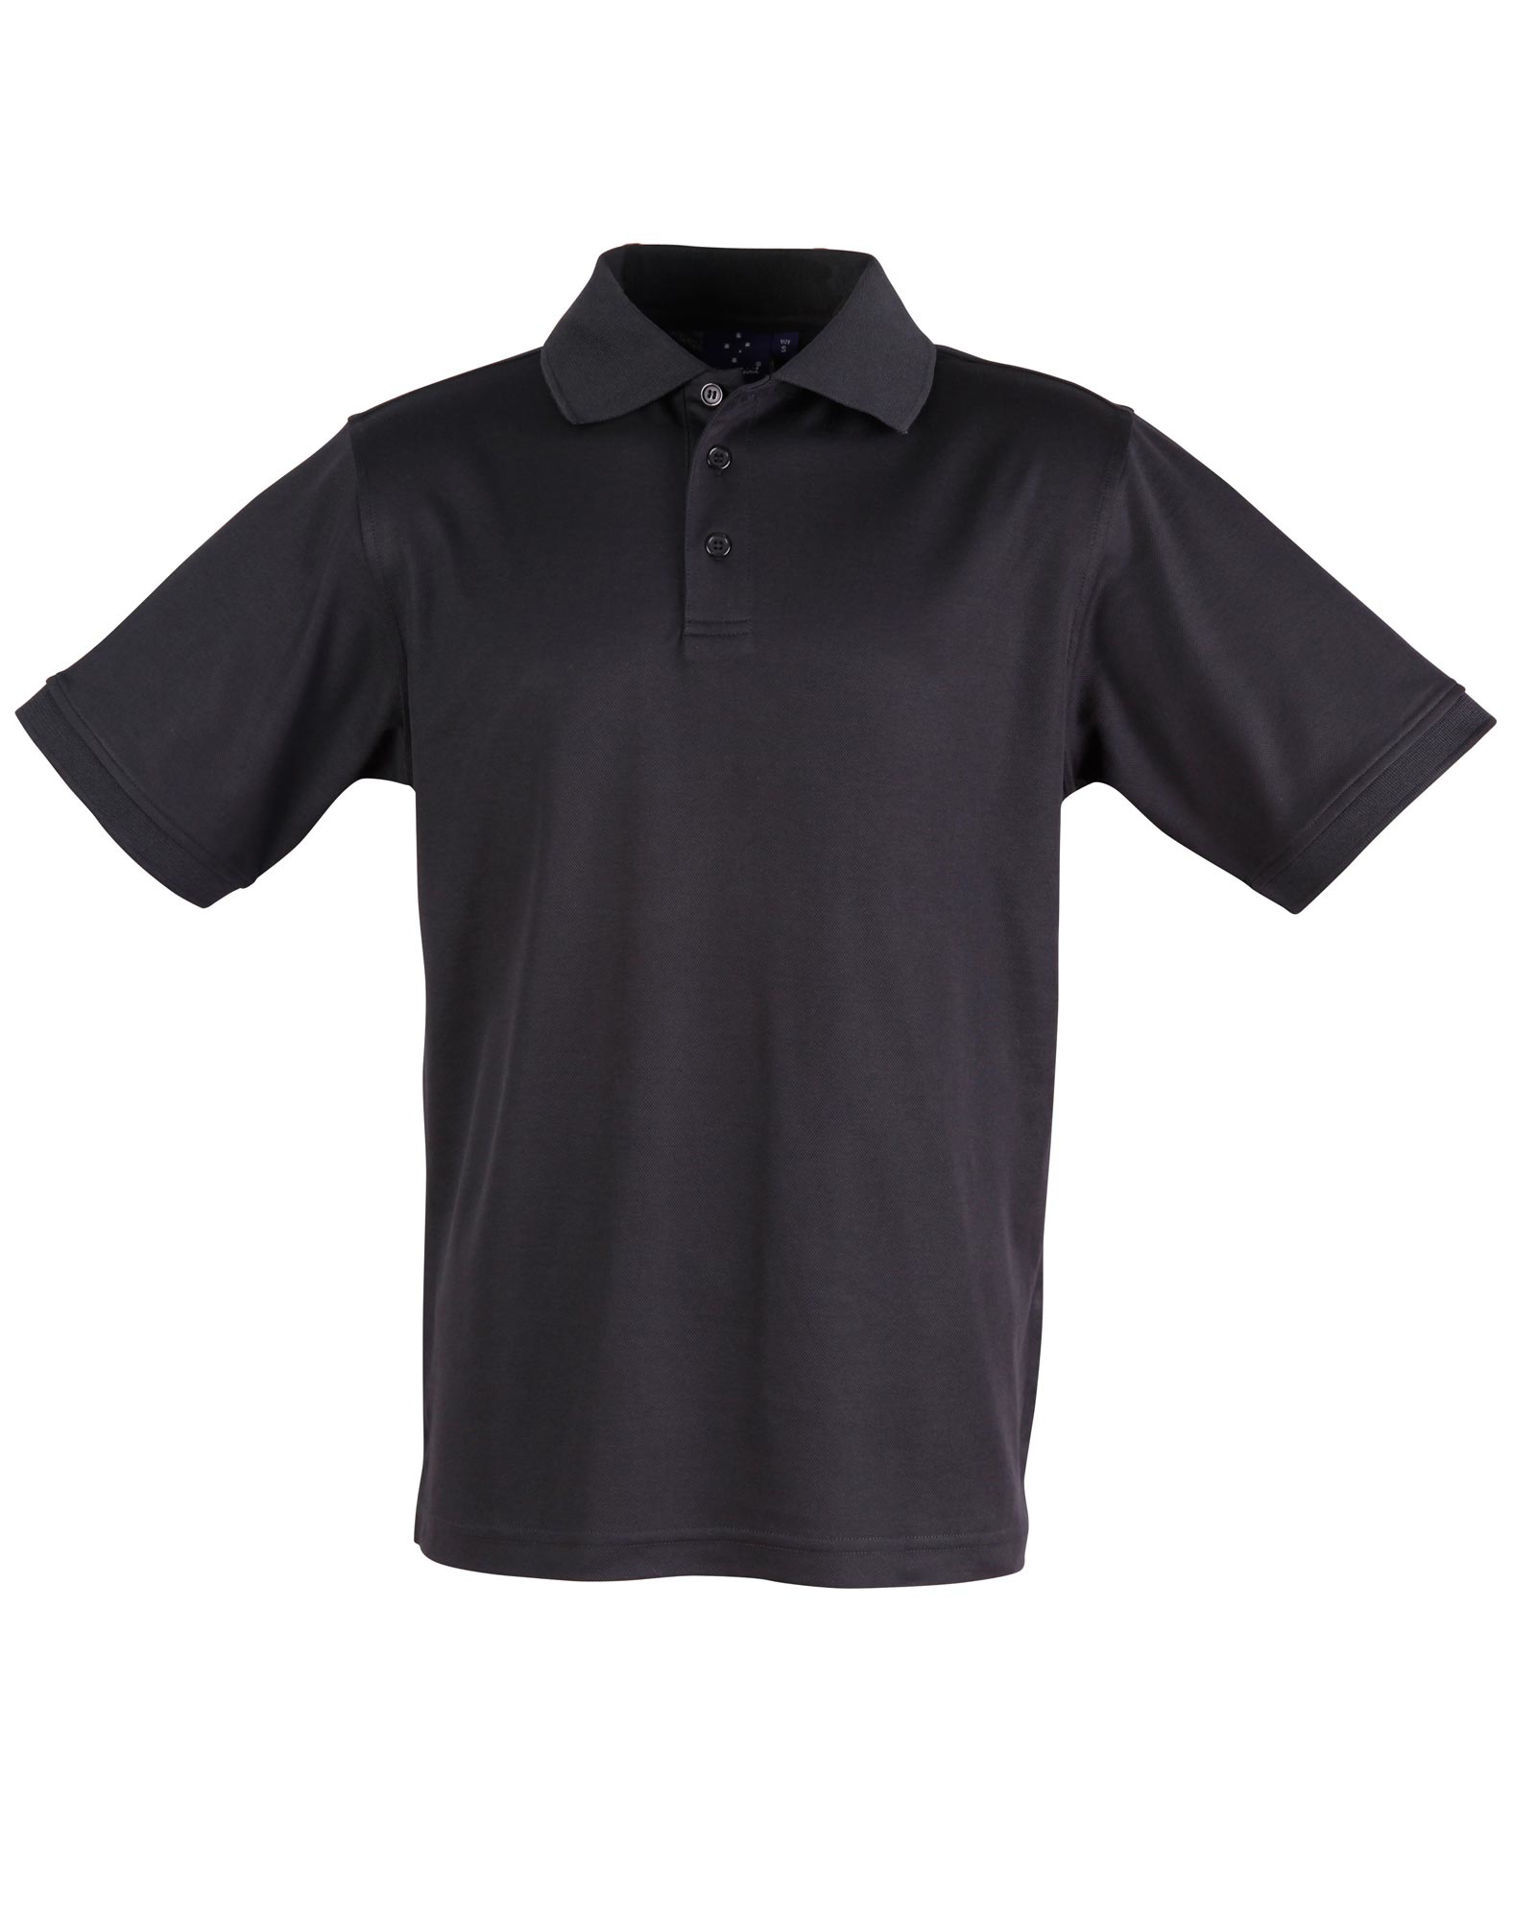 Men's TrueDry Short Sleeve Polo # PS33 - Winning Spirit